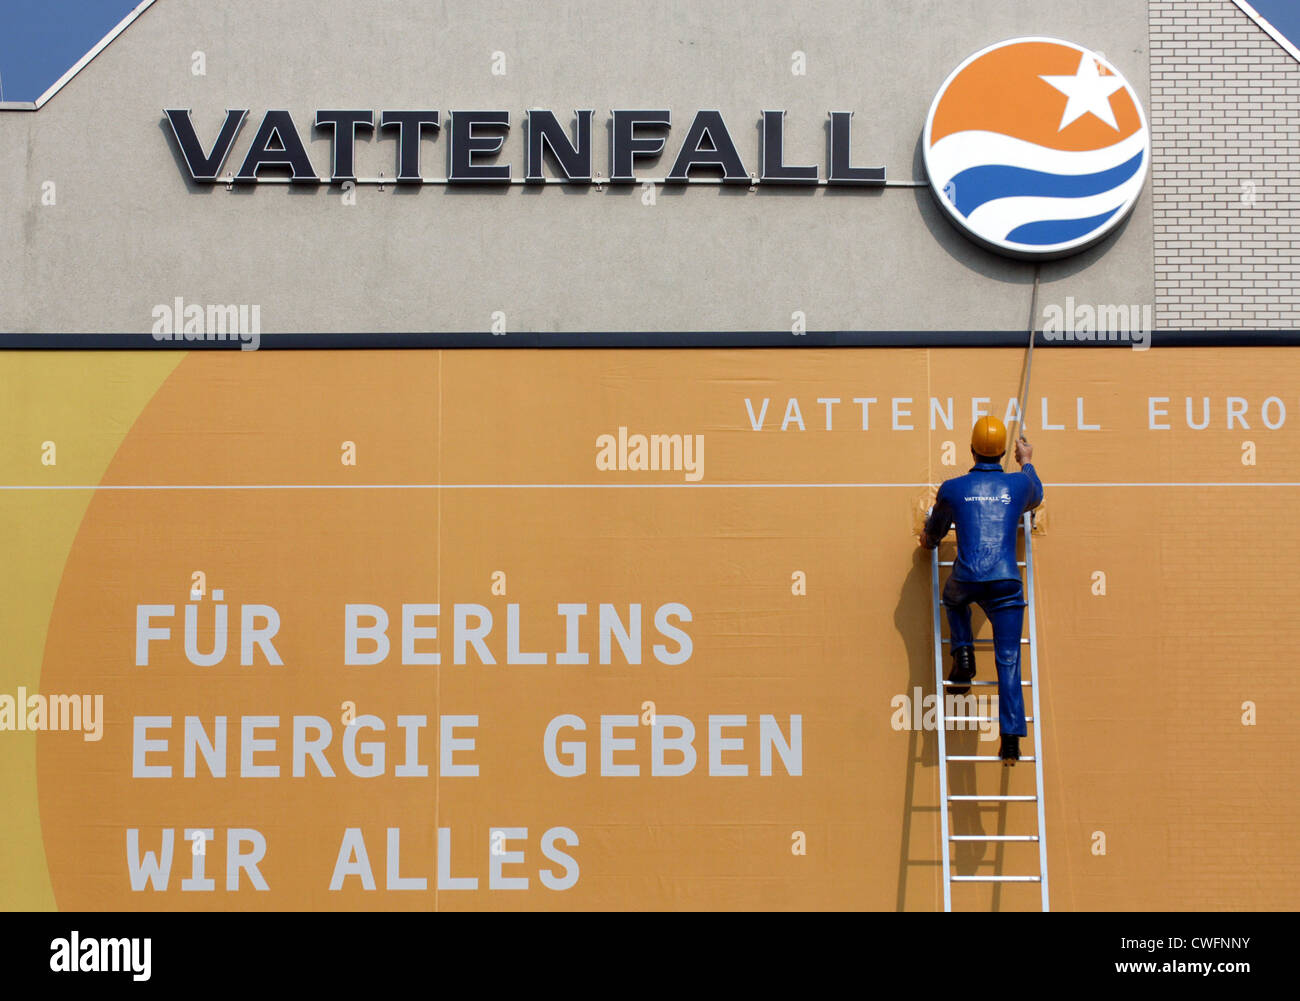 Berlin, Vattenfall pour la publicité Banque D'Images